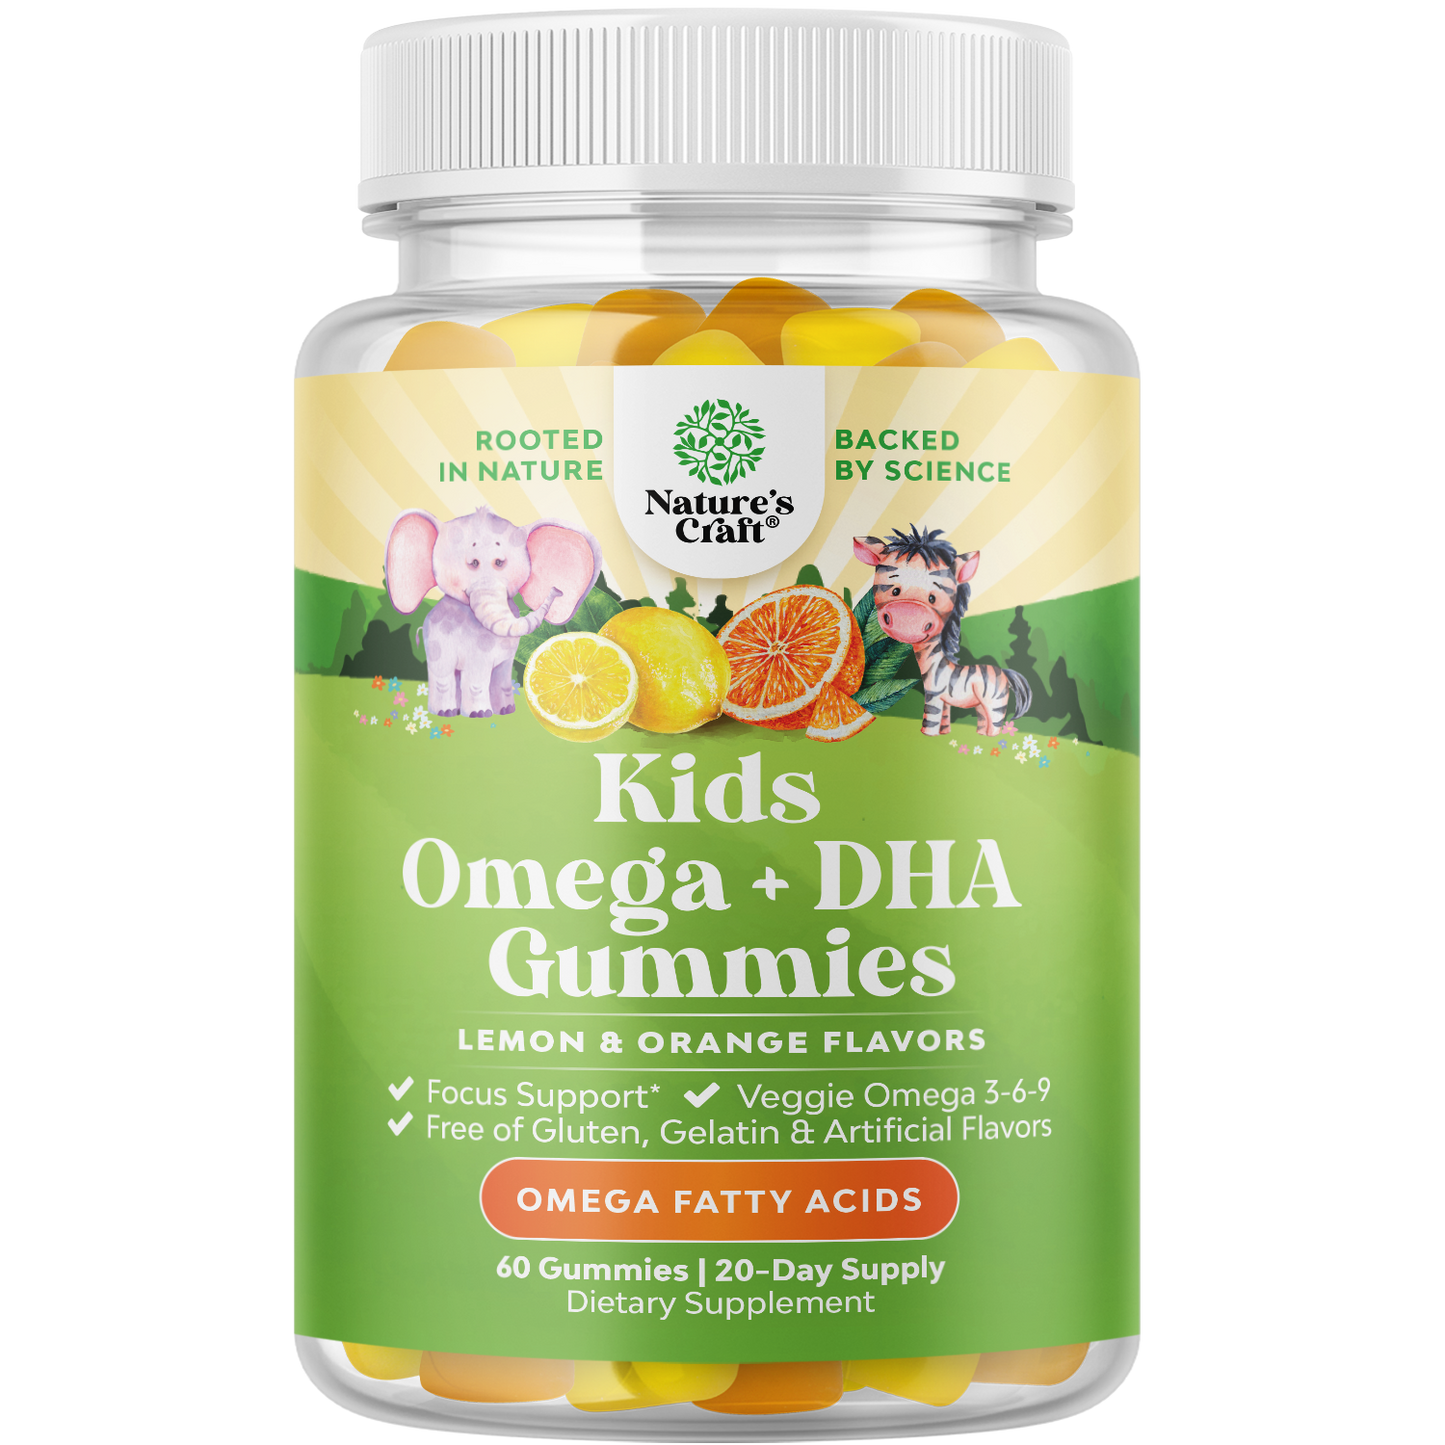 Kids Omega + DHA Gummies